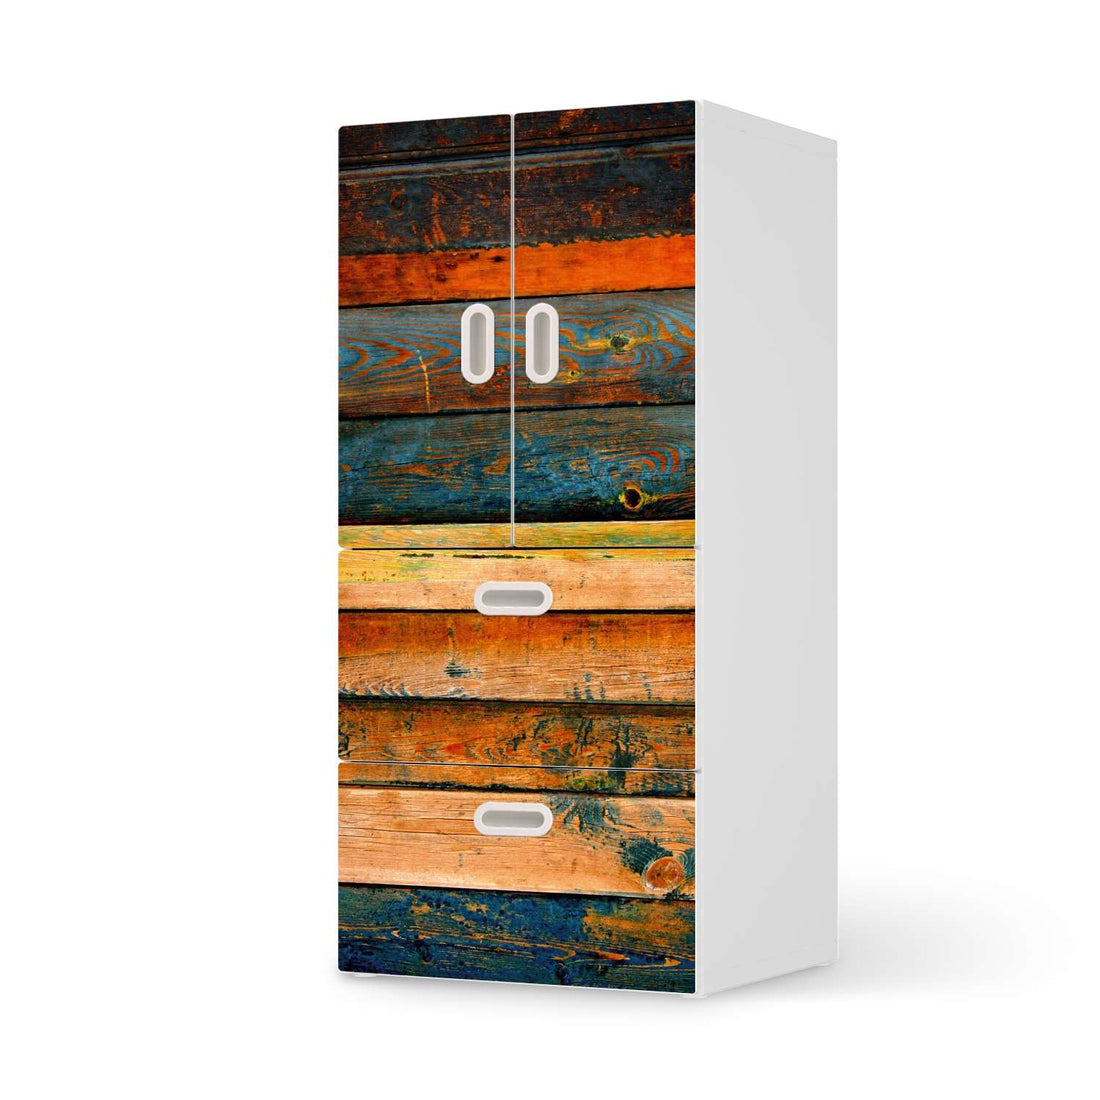 Möbelfolie Wooden - IKEA Stuva / Fritids kombiniert - 2 Schubladen und 2 kleine Türen  - weiss